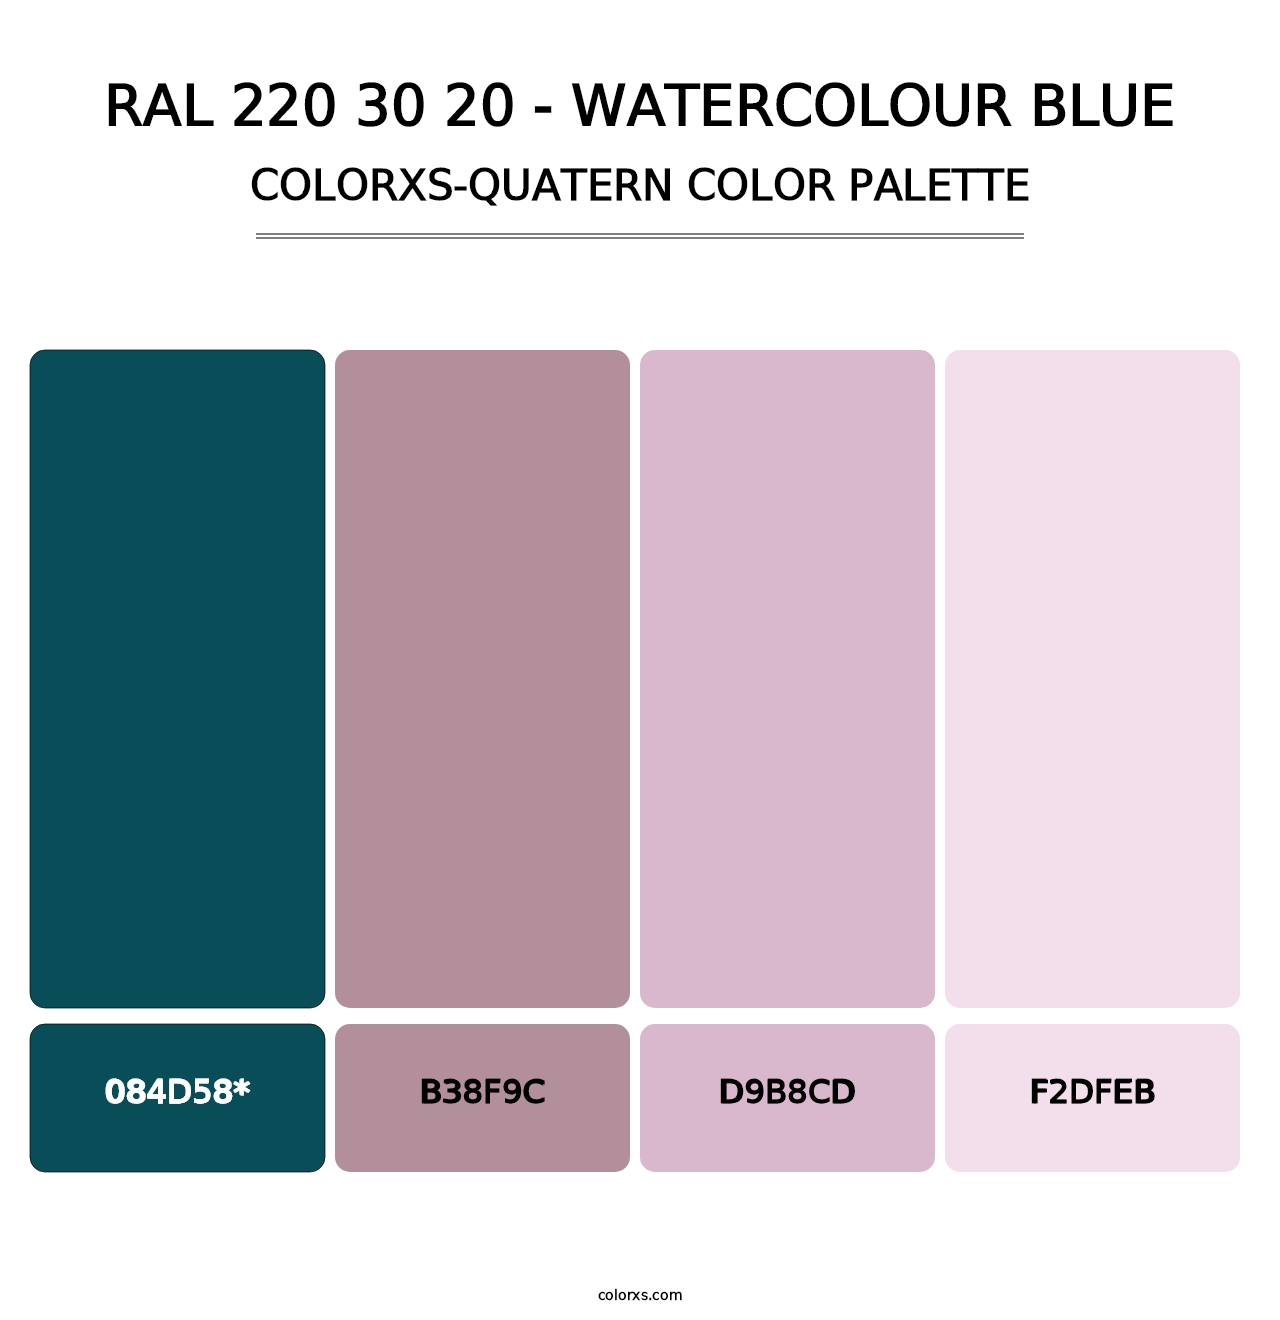 RAL 220 30 20 - Watercolour Blue - Colorxs Quatern Palette